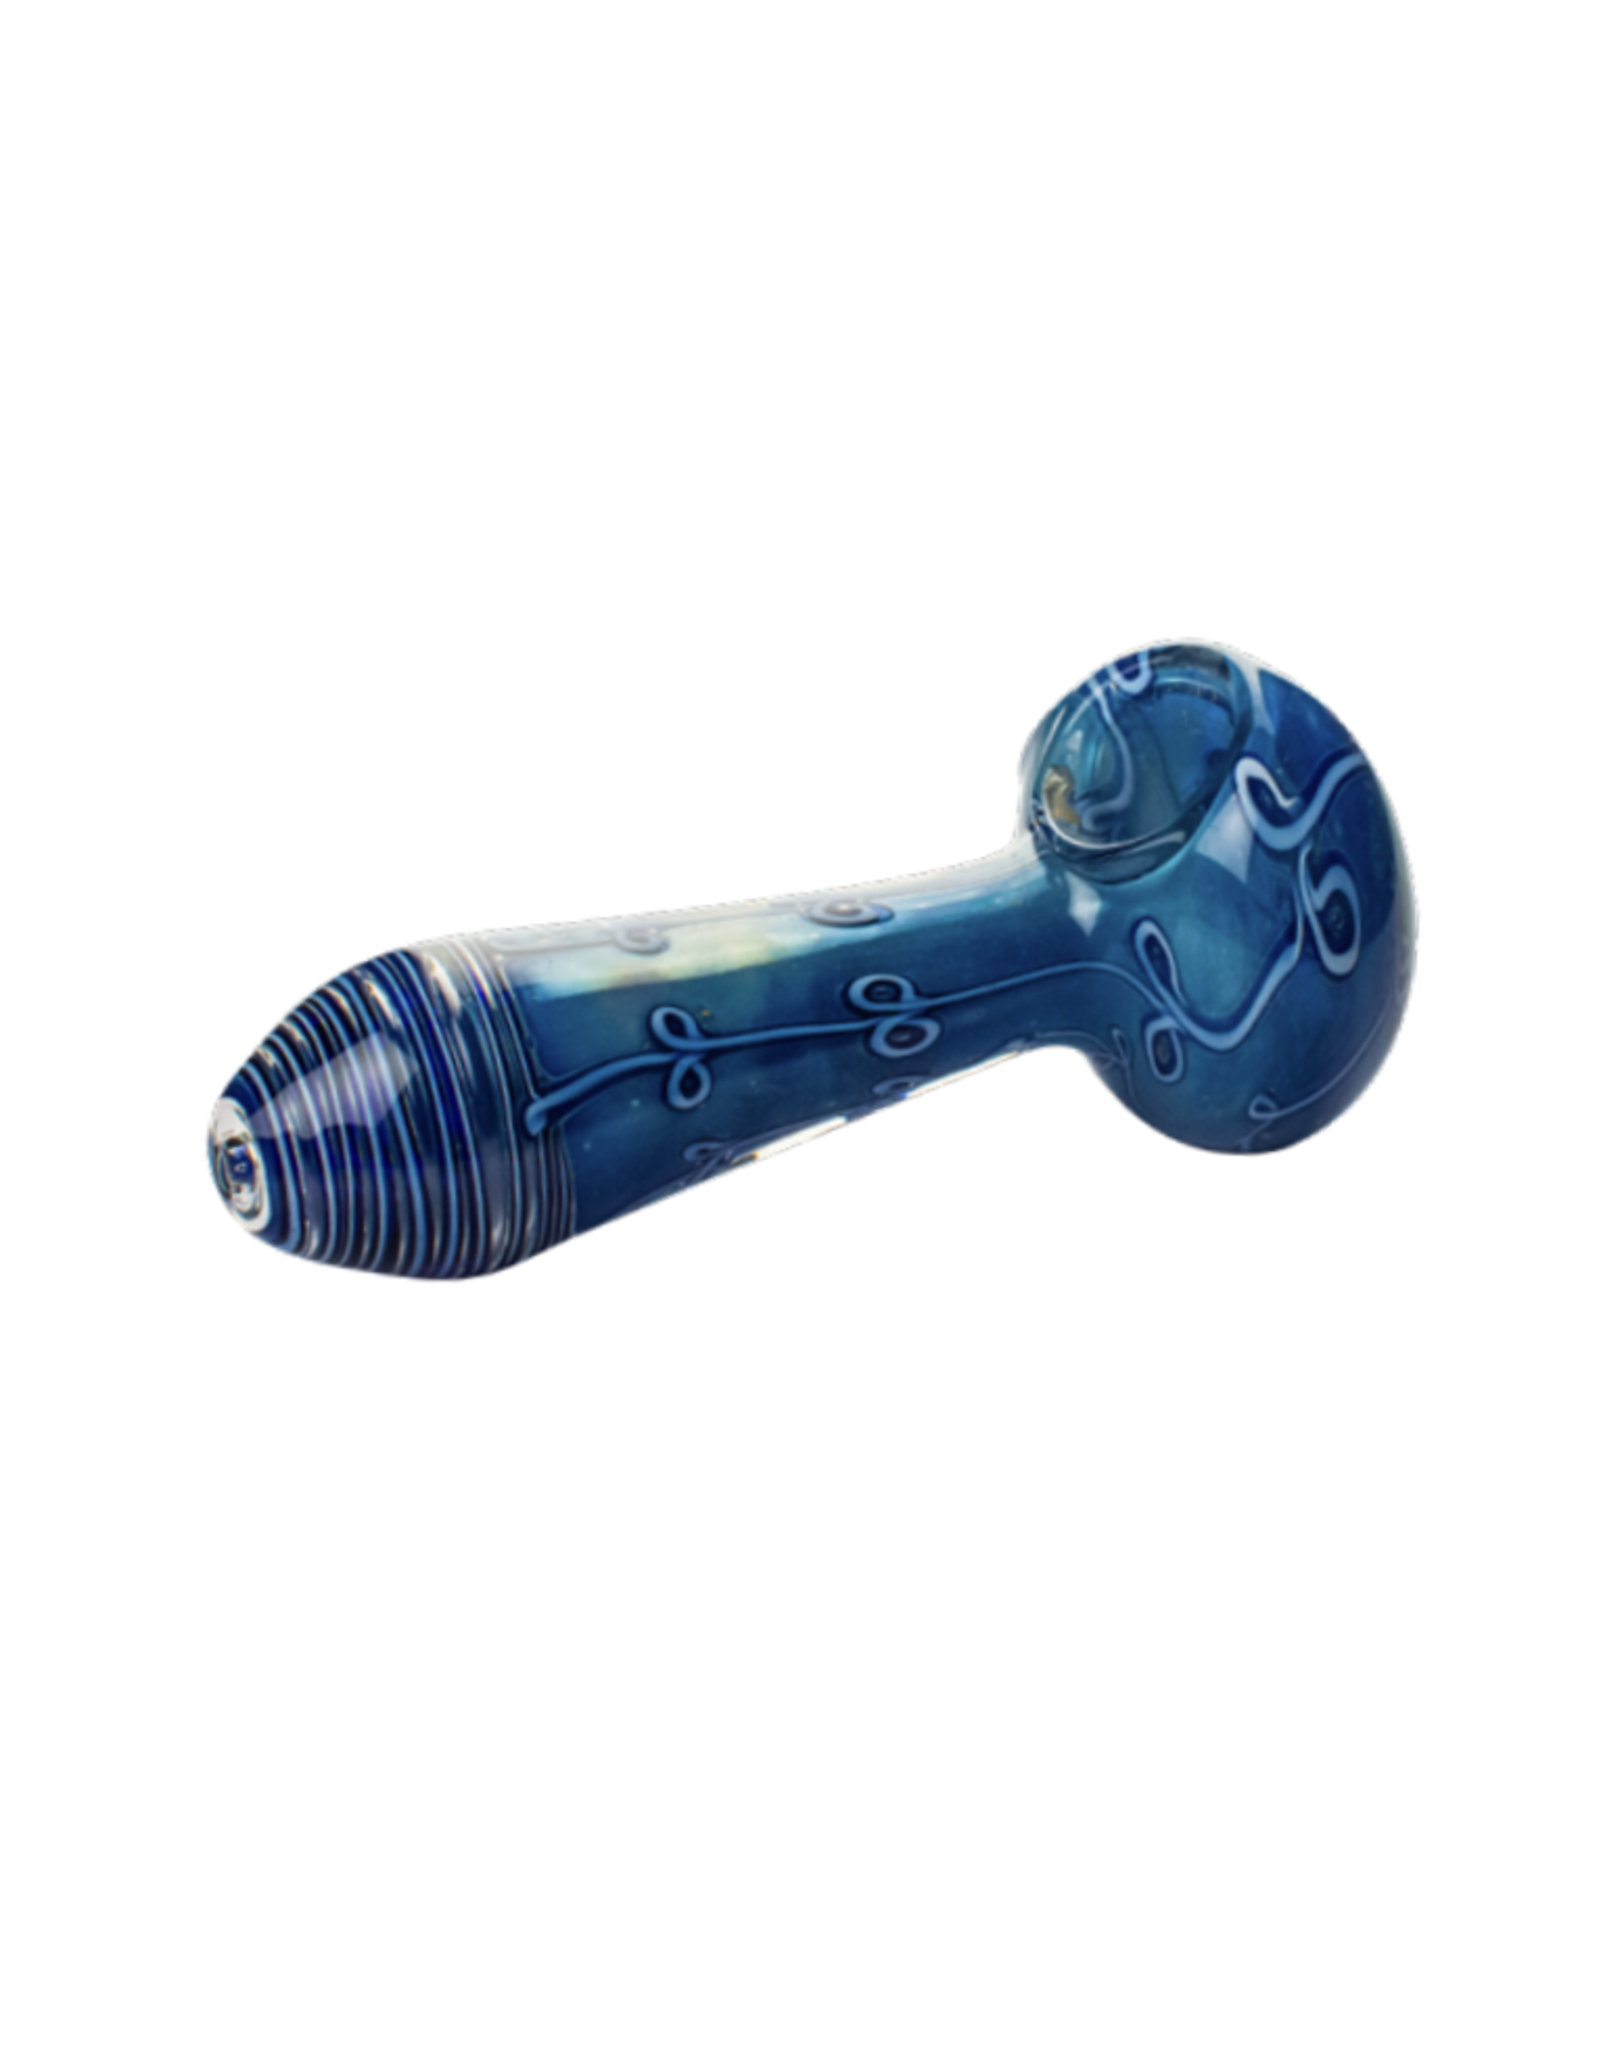 ACM Glass 4" Blue Handpipe by OG Original